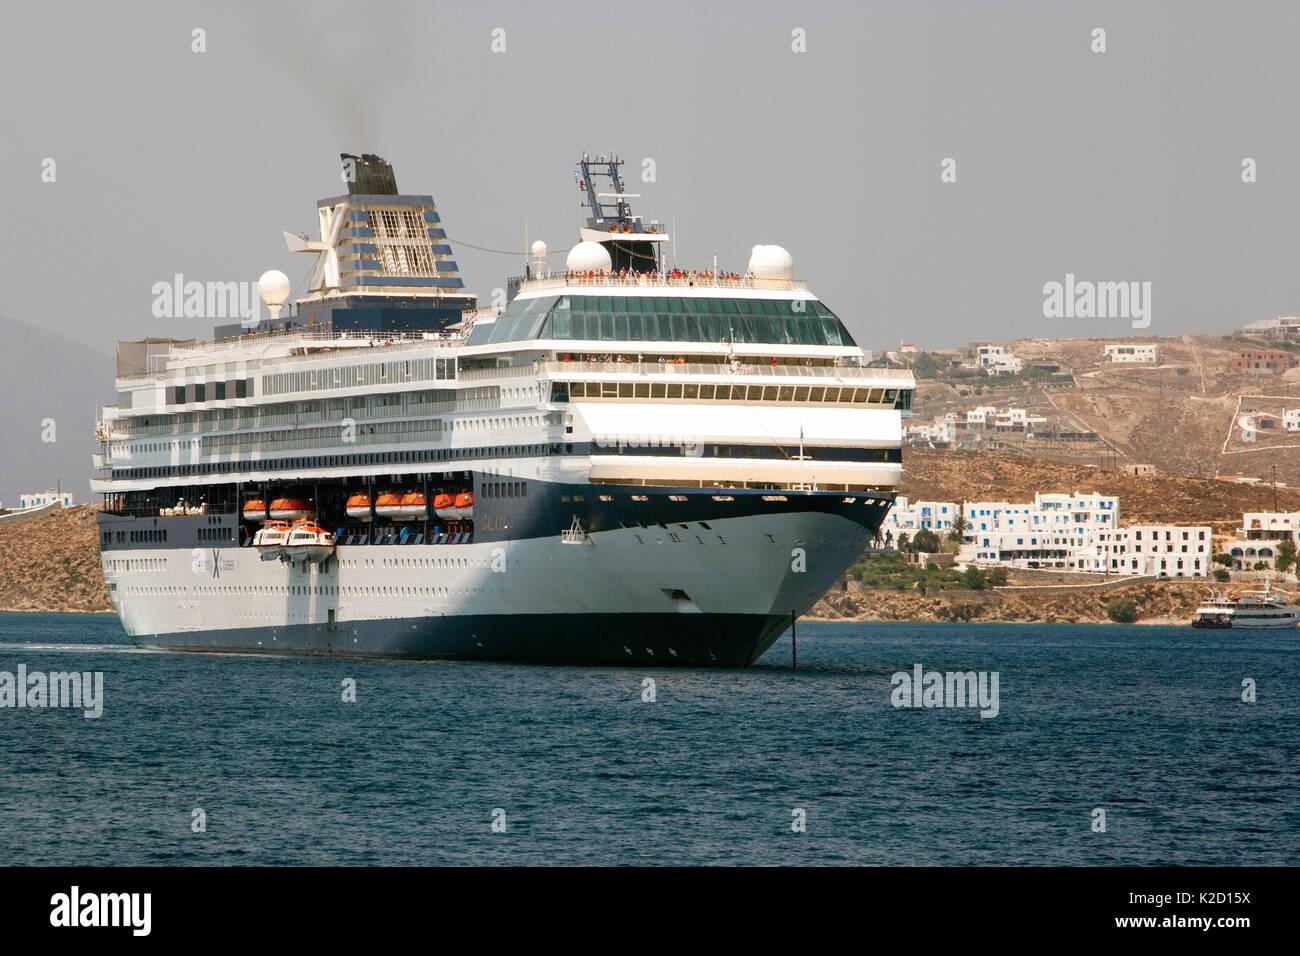 Kreuzfahrtschiff "Celebrity Cruises" außerhalb der Stadt Mykonos verankert, da Sie nicht in der Lage ist, den Hafen aufgrund seiner Größe einzugeben. Insel Mykonos, Kykladen, Ägäis, Mittelmeer, Griechenland, August 2007. Stockfoto